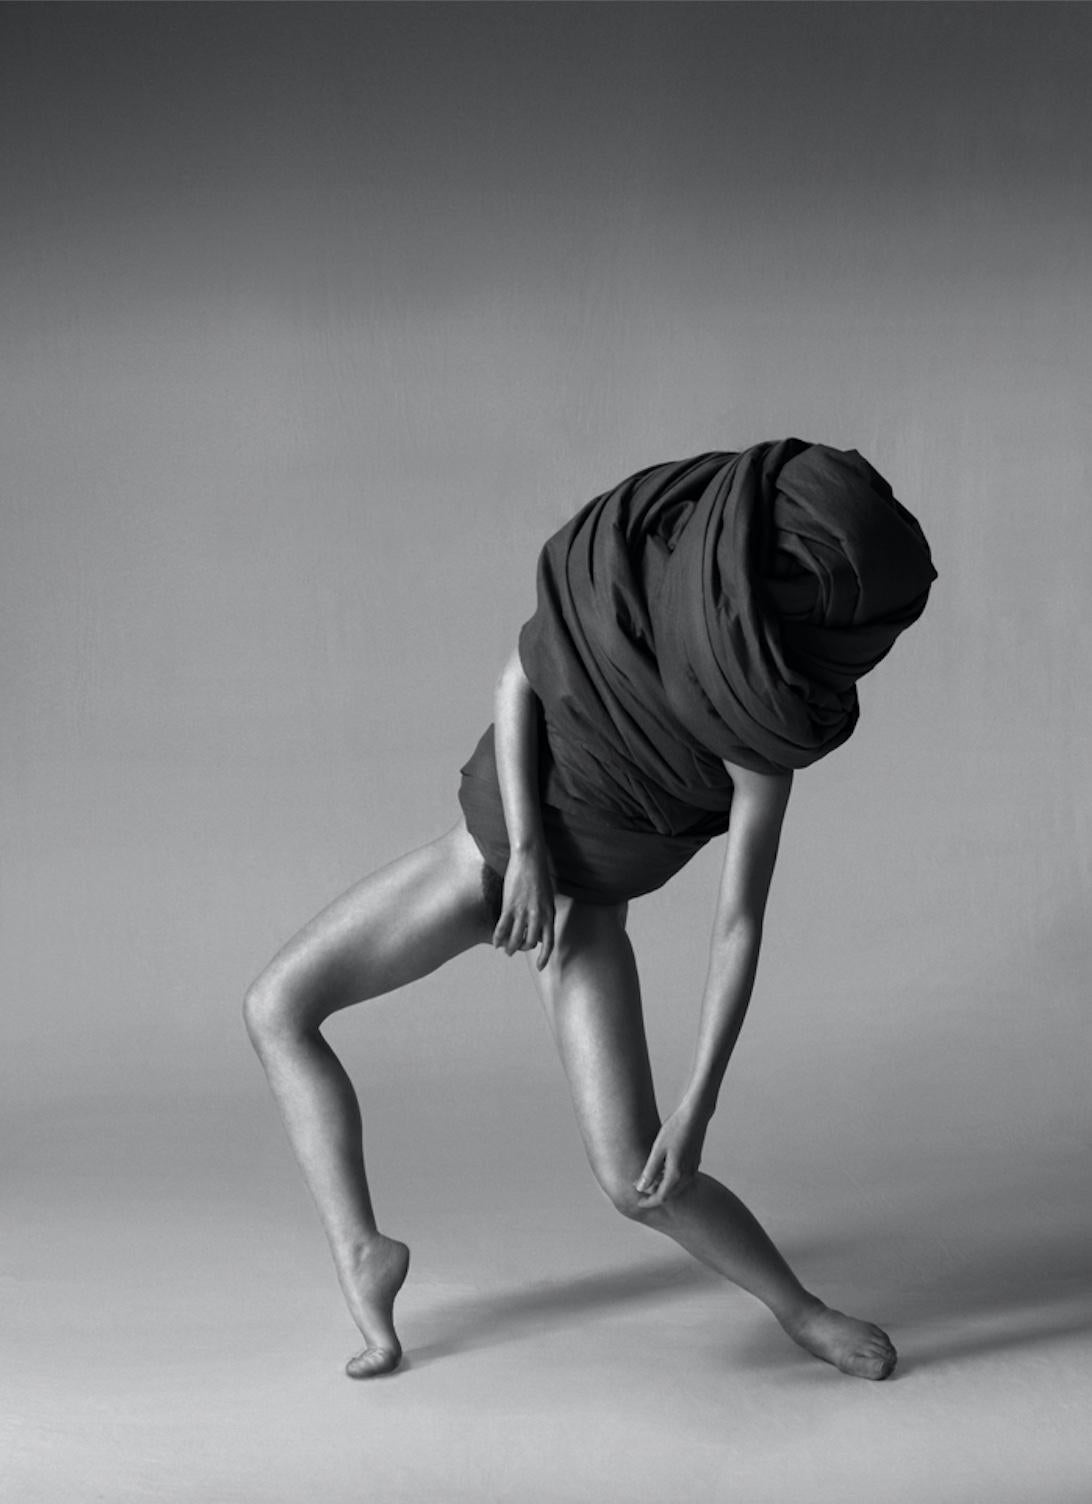 168.07.12 ist eine Schwarz-Weiß-Fotografie des zeitgenössischen Künstlers Klaus Kampert aus der Serie Wrapped in limitierter Auflage. In dieser Serie verwendet Klaus Kampert Stoff, um seine Modelle teilweise zu verhüllen. Die eingenommenen Posen